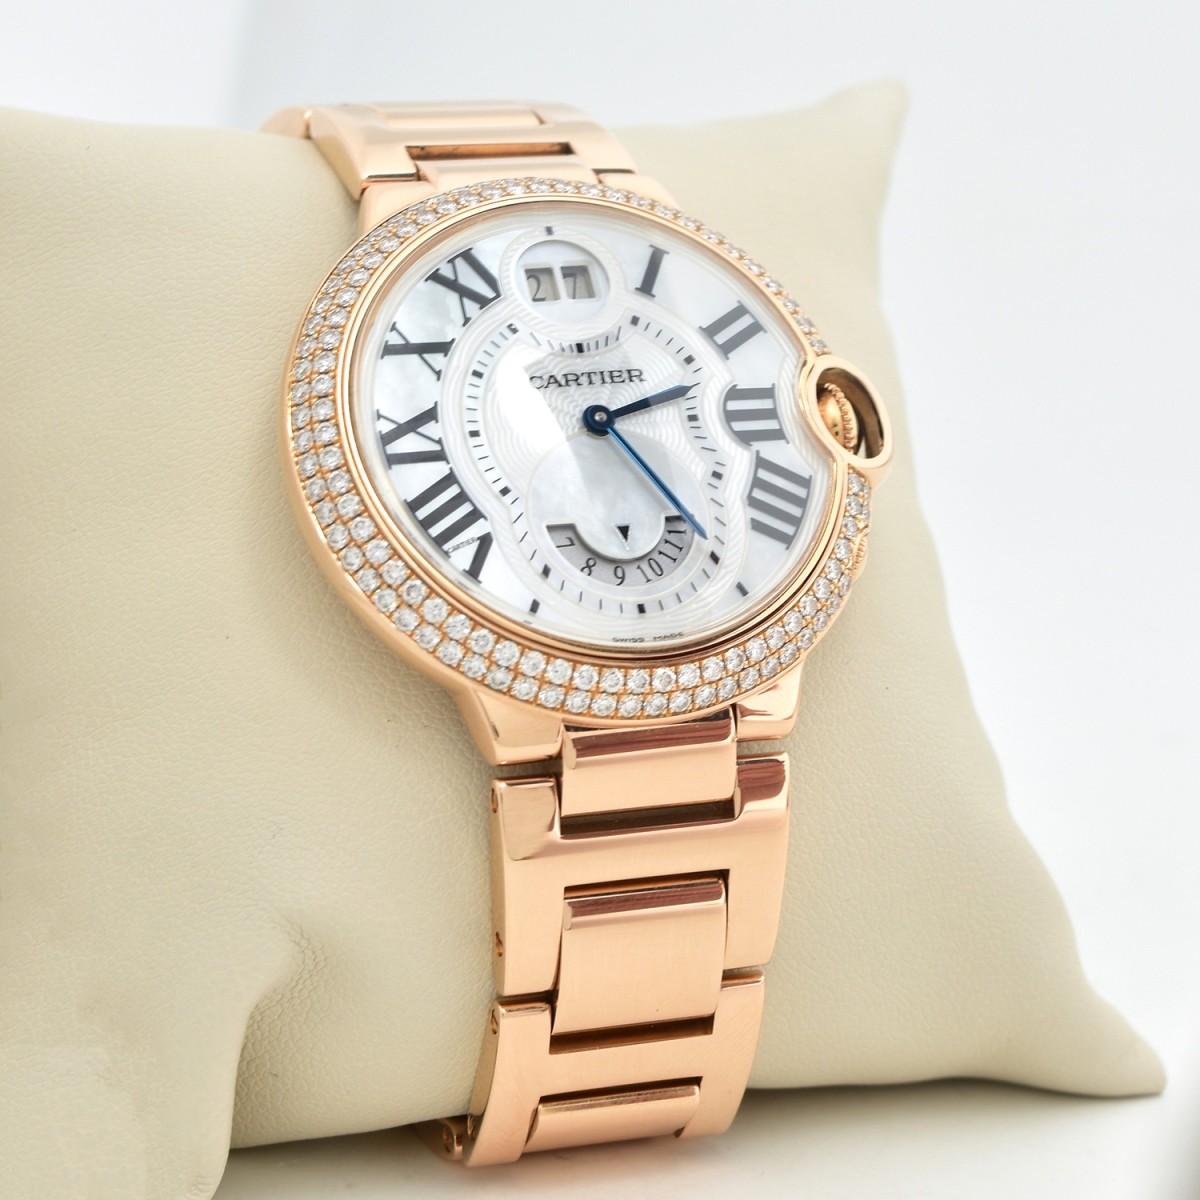 Cartier Ballon Bleu 18K Watch